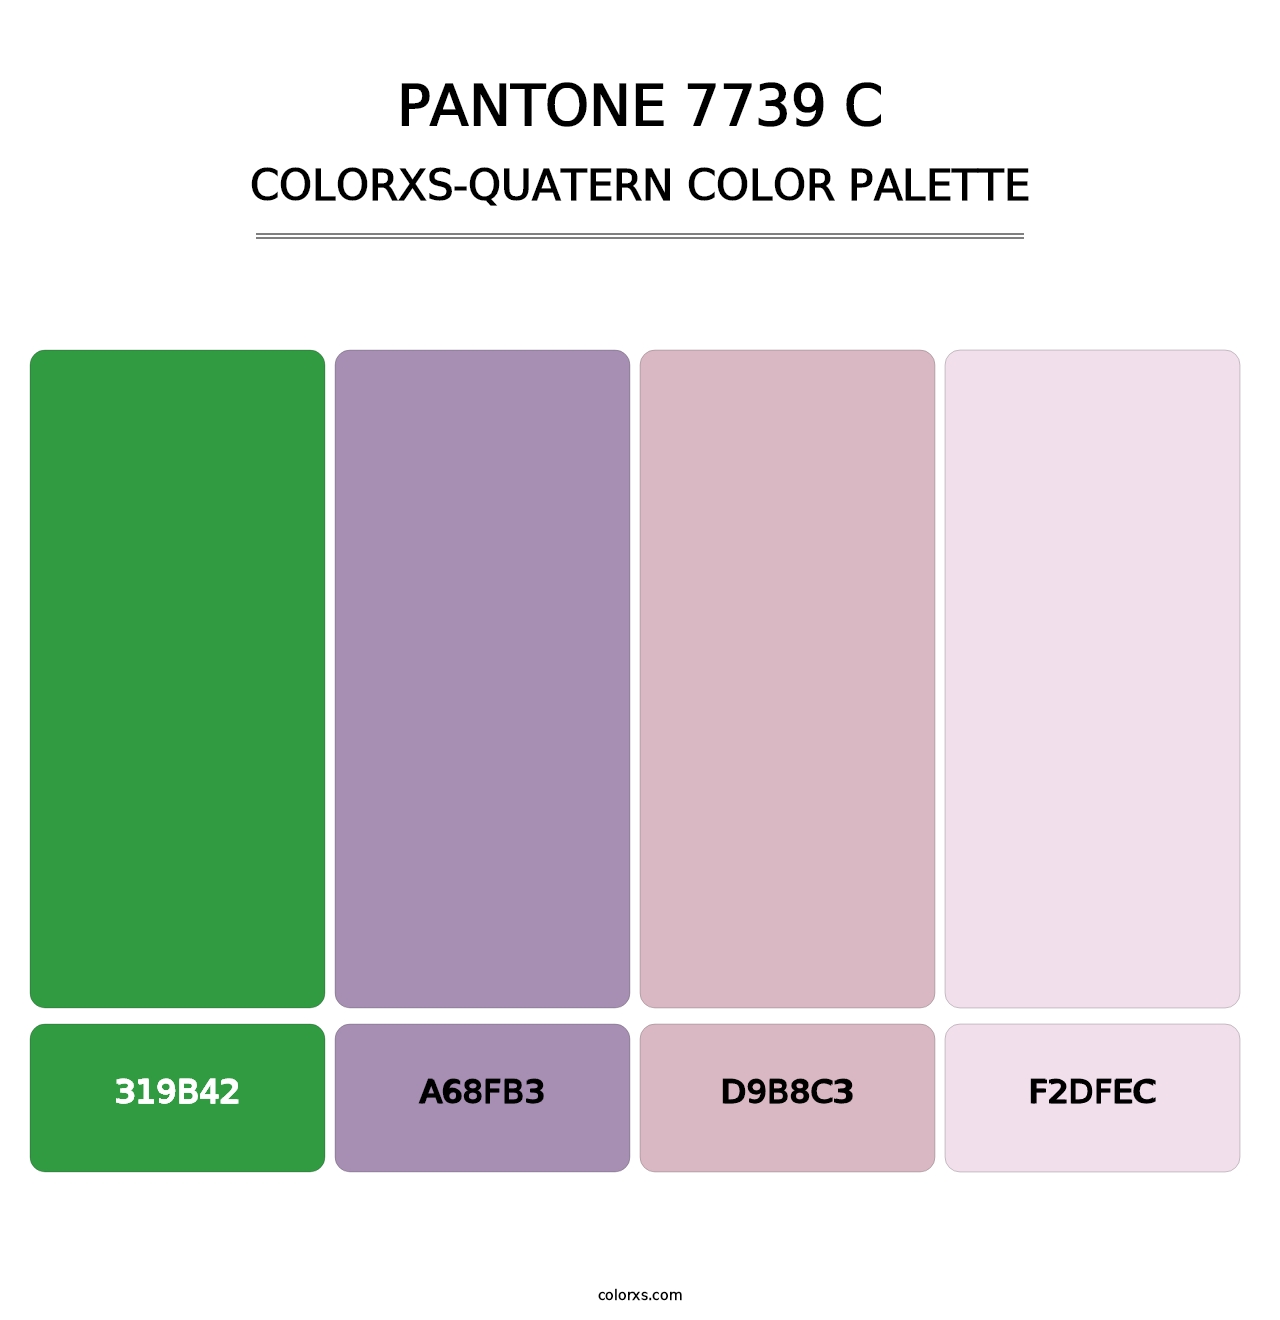 PANTONE 7739 C - Colorxs Quatern Palette